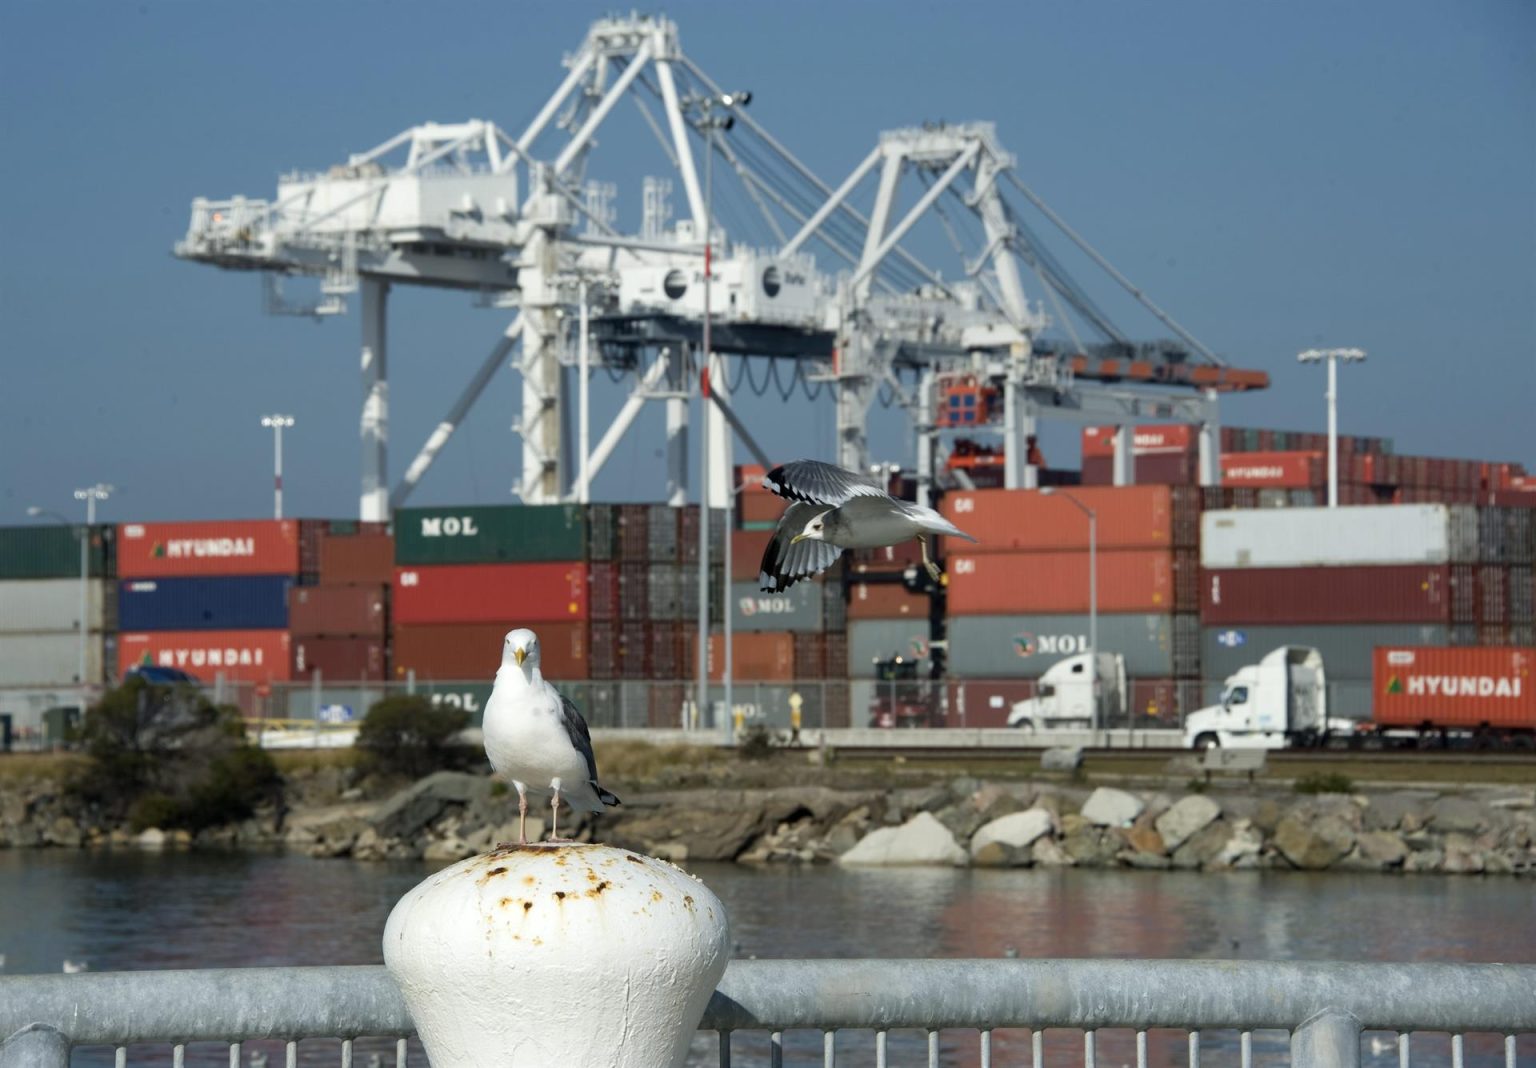 Vista de varios contenedores en el Puerto de Oakland, California (EEUU), donde llegan los barcos provenientes de Asia con productos de consumo. Imagen de archivo. EFE/JOHN G. MABANGLO